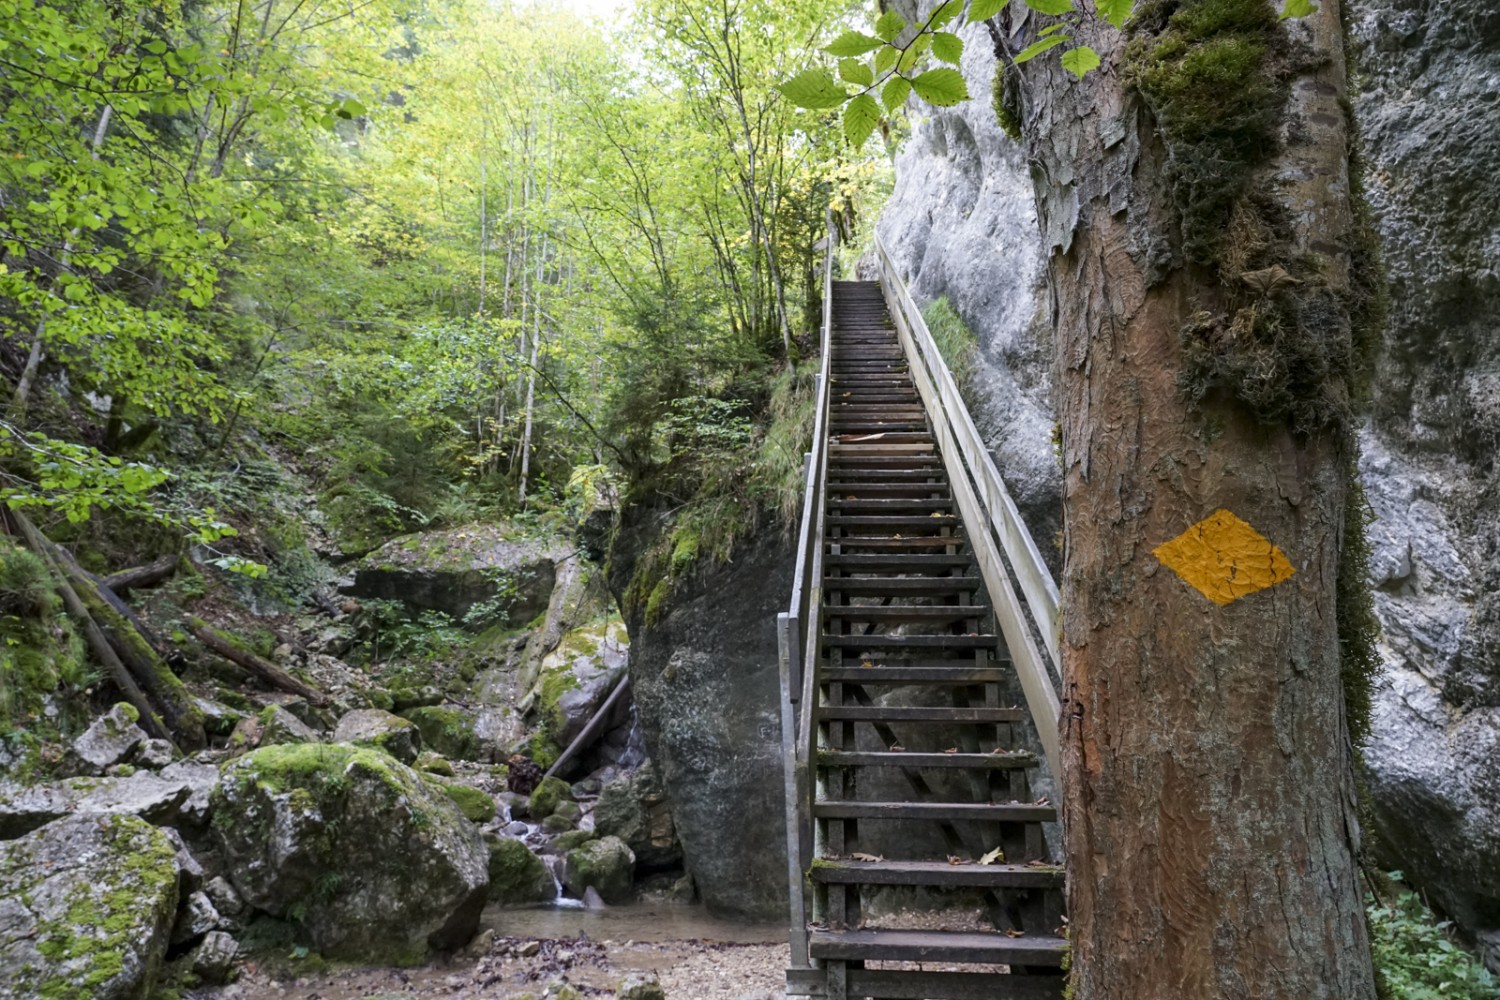 Le chemin de randonnée pédestre varié des gorges de Perrefitte est bien aménagé. Photo : Reto Wissmann